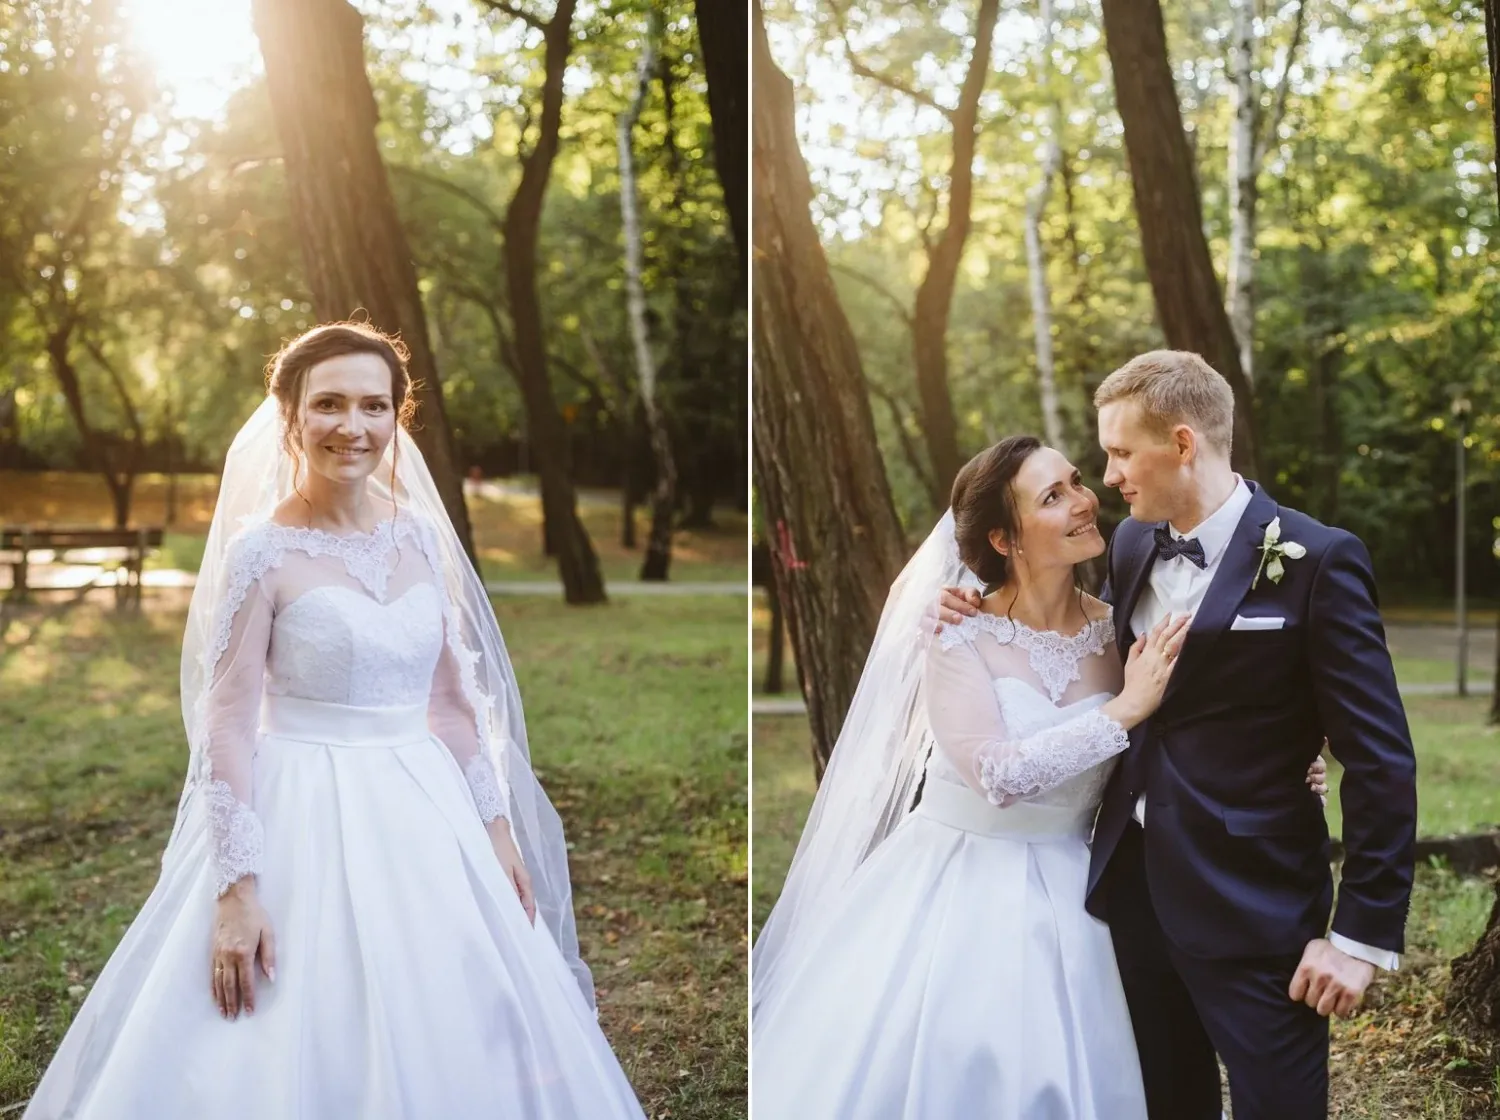 grazynajacek_wedding_18.webp - Grażyna & Jacek- Monika Chmielewska - wedding, portaits, family photography - Munich